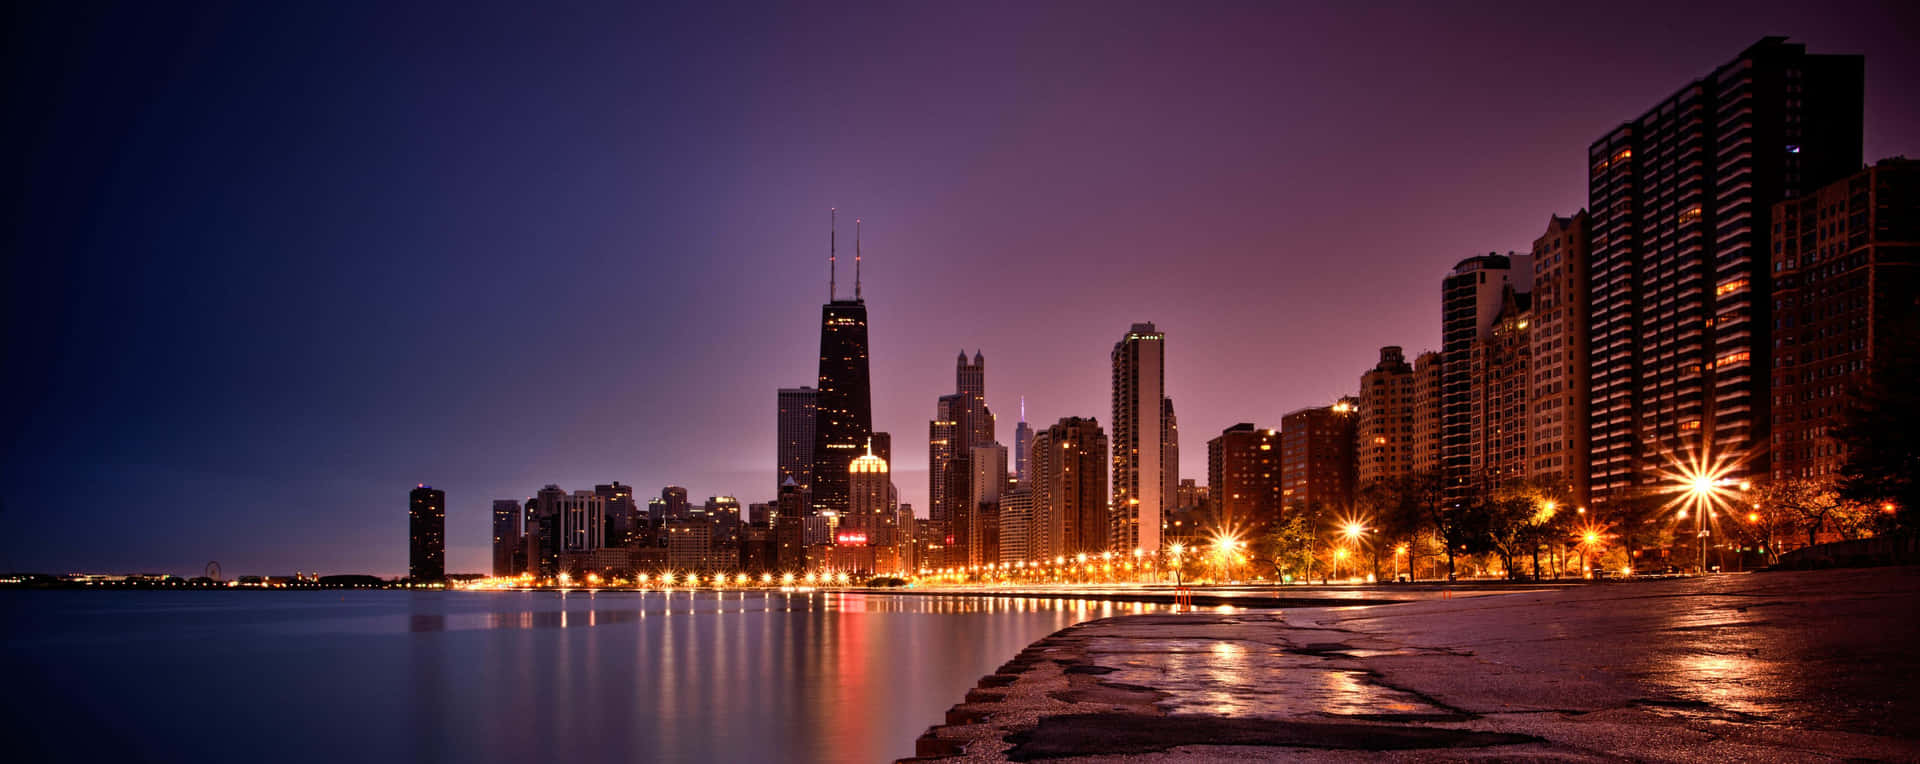 Denfantastiske Chicago Skyline